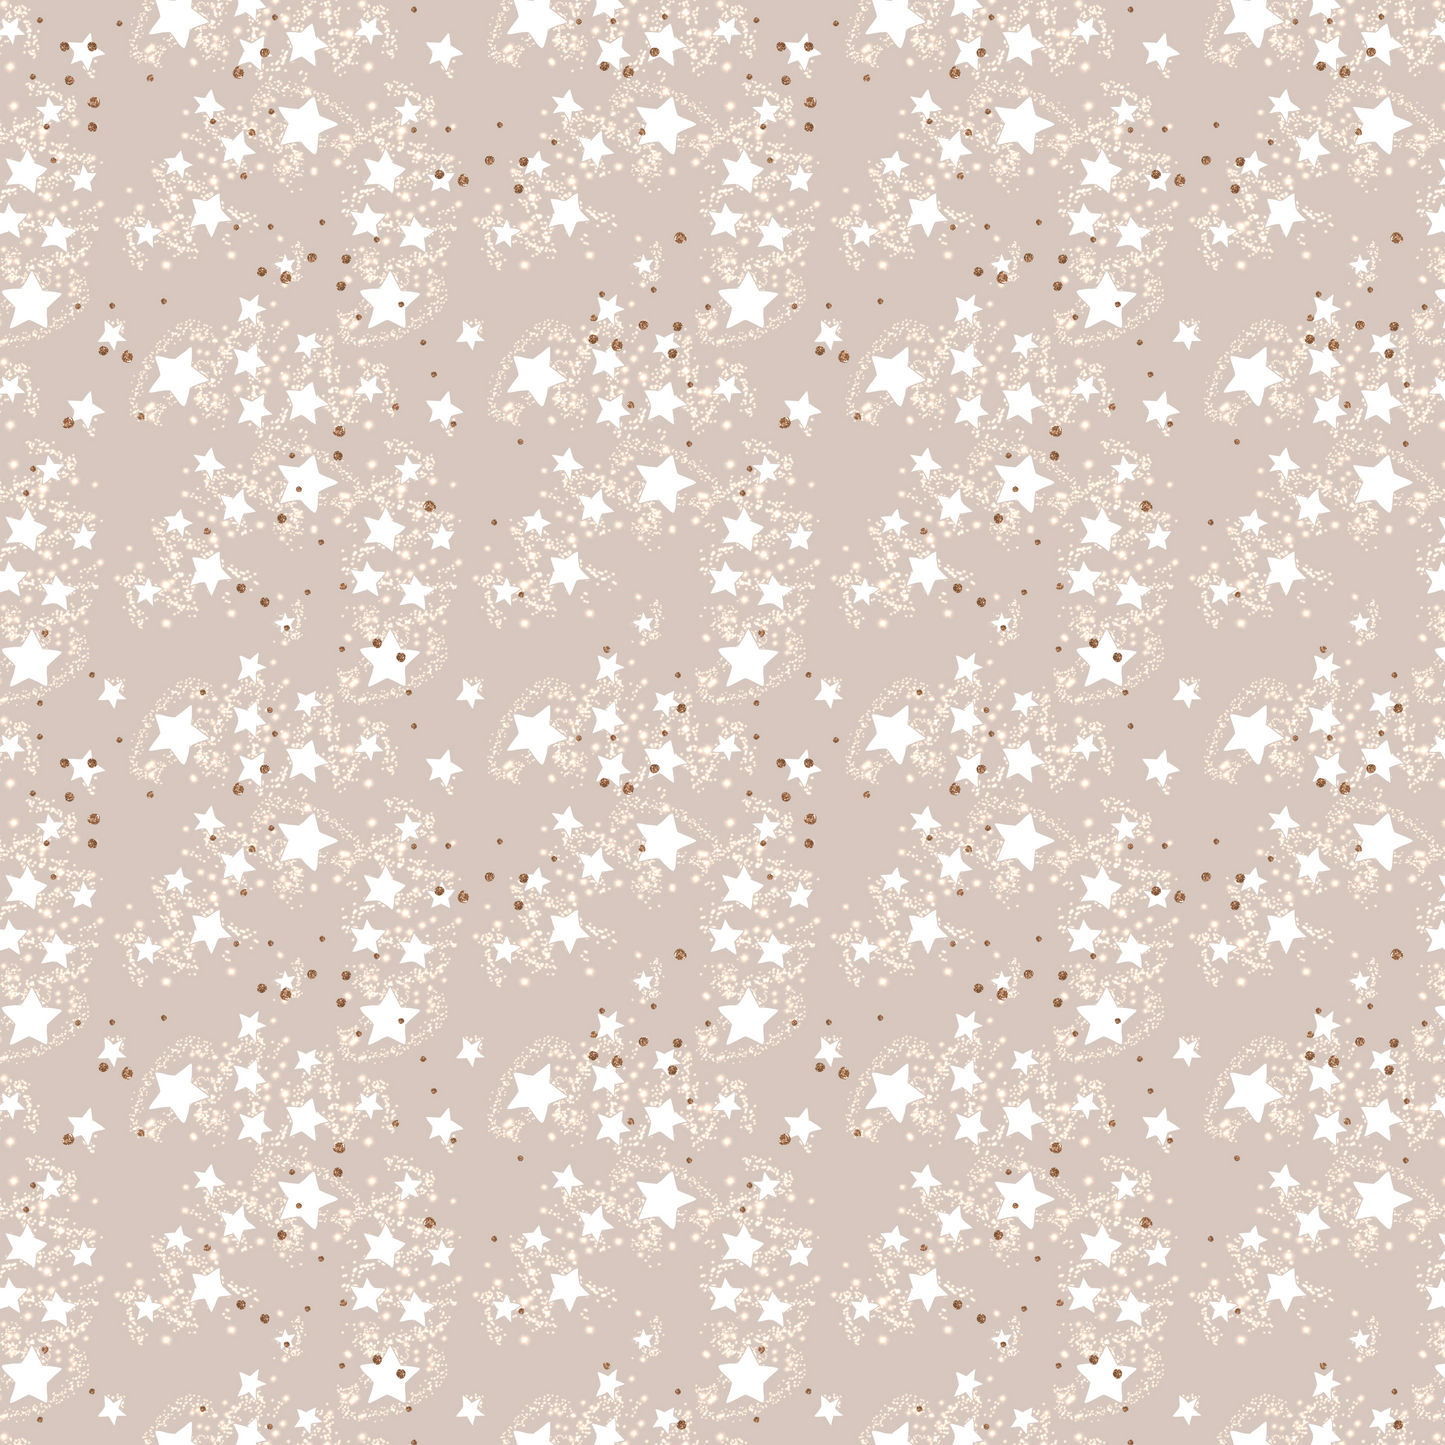 Noël blanc - Star Dust 009